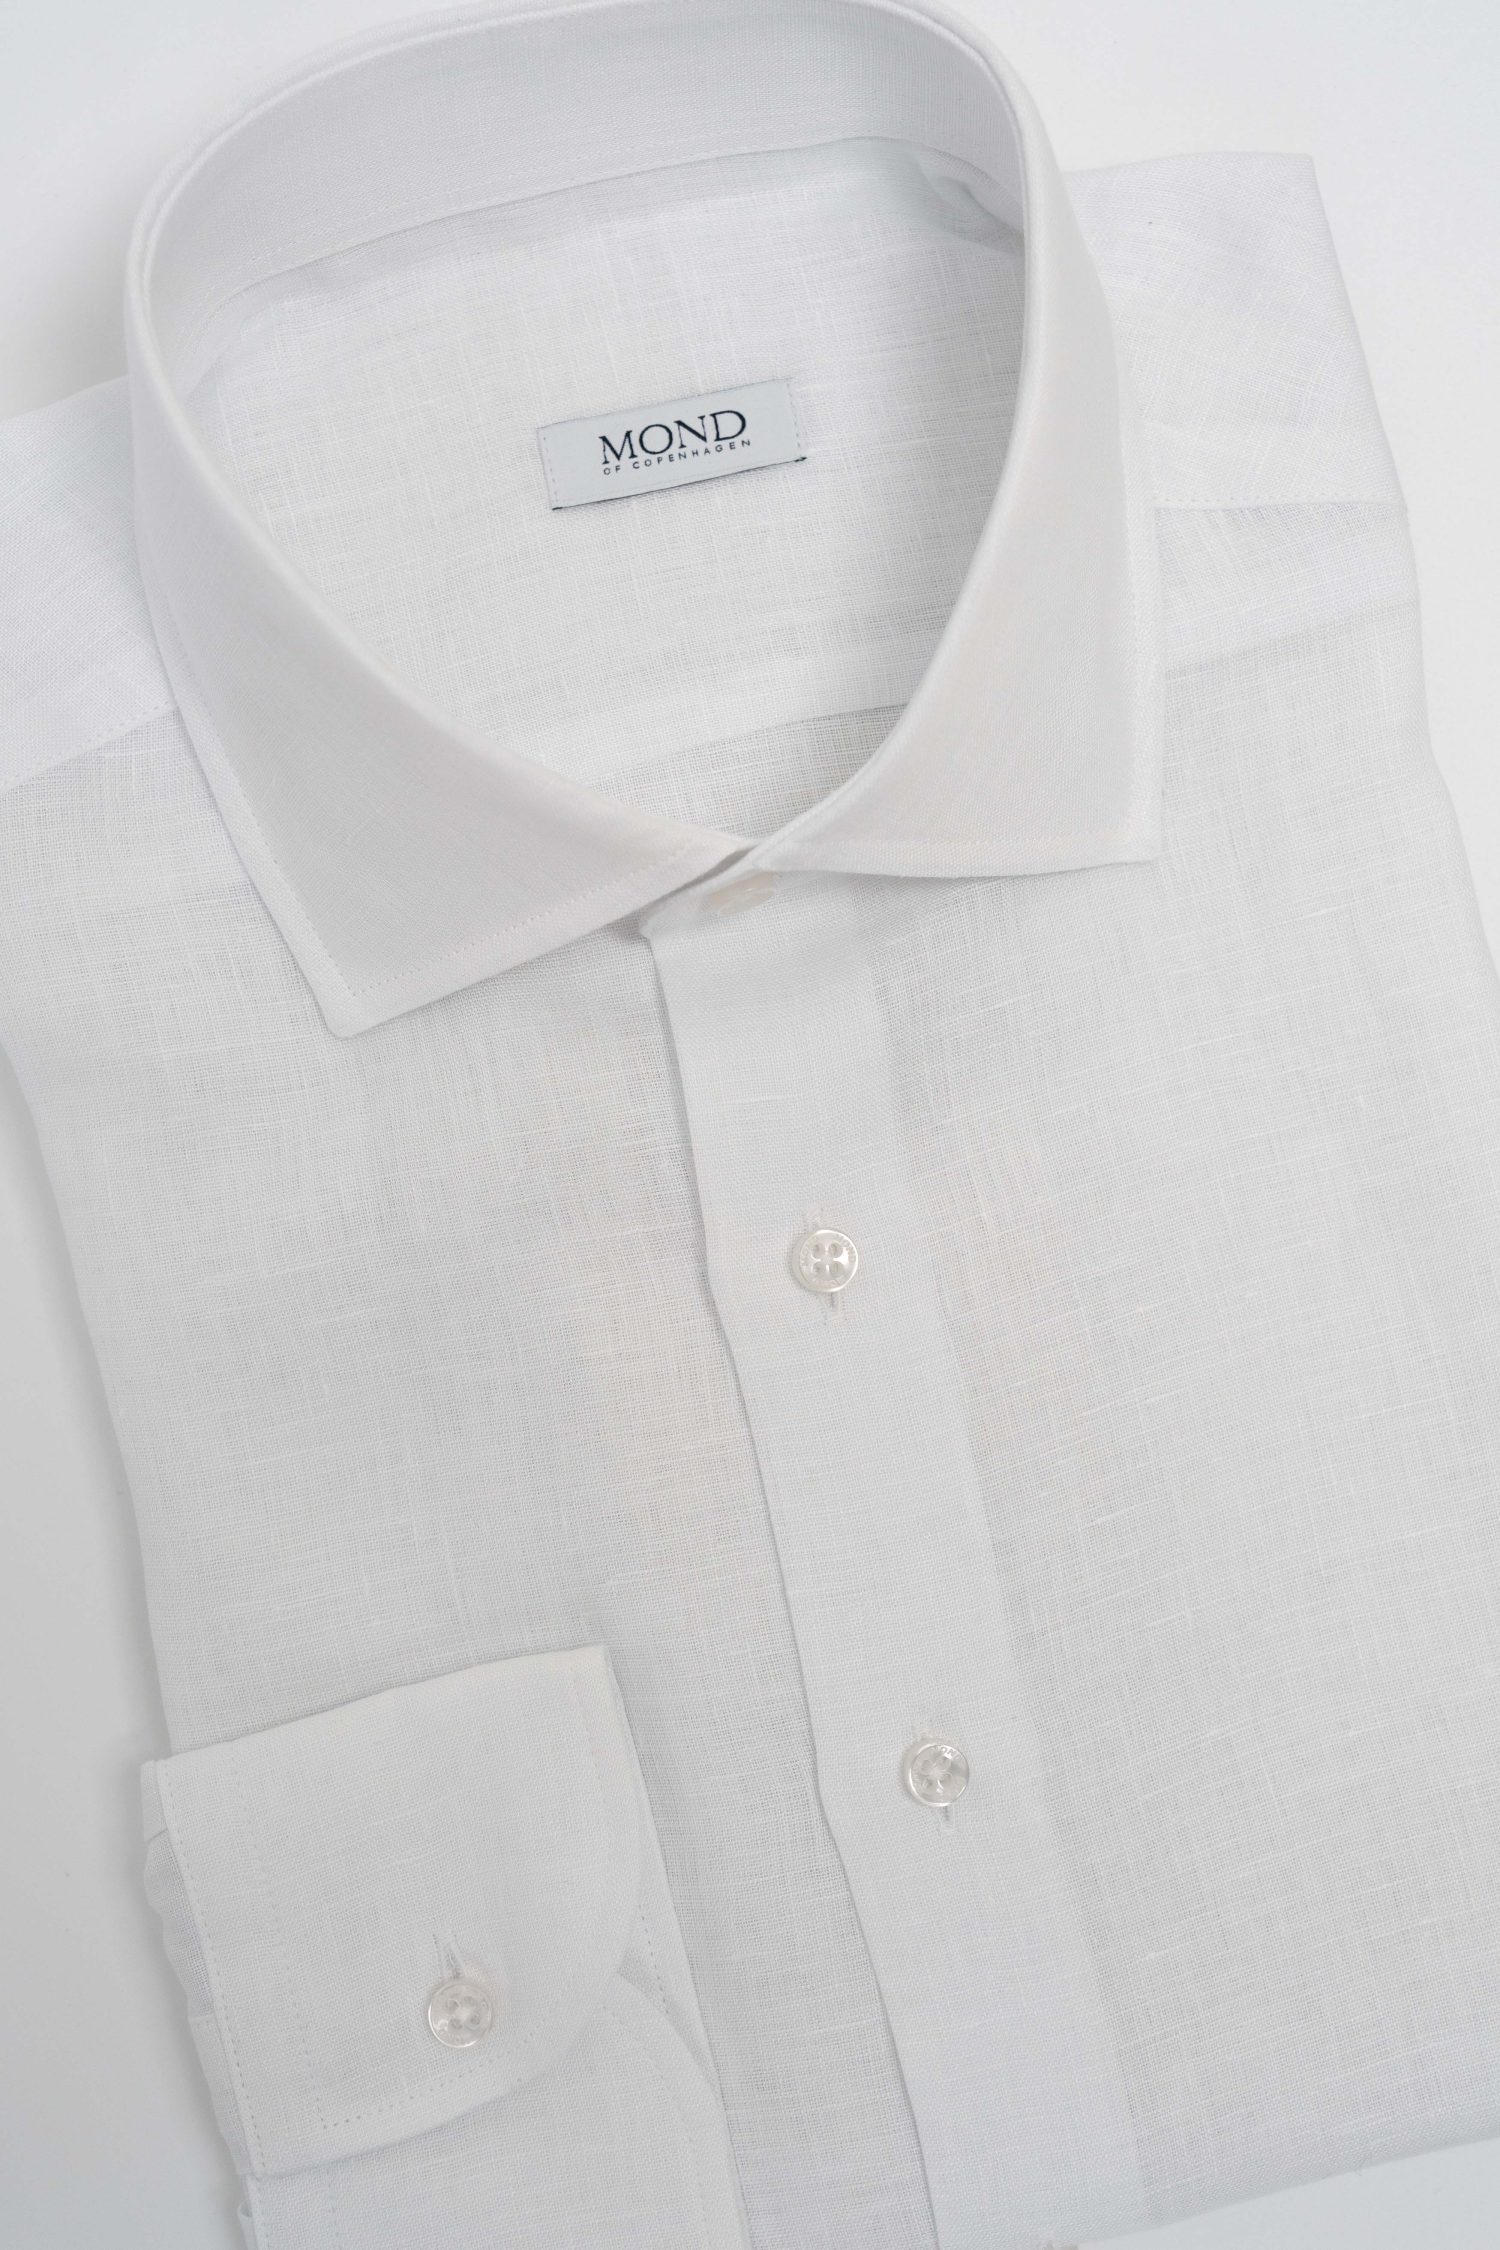 Mond custom made white linen shirt